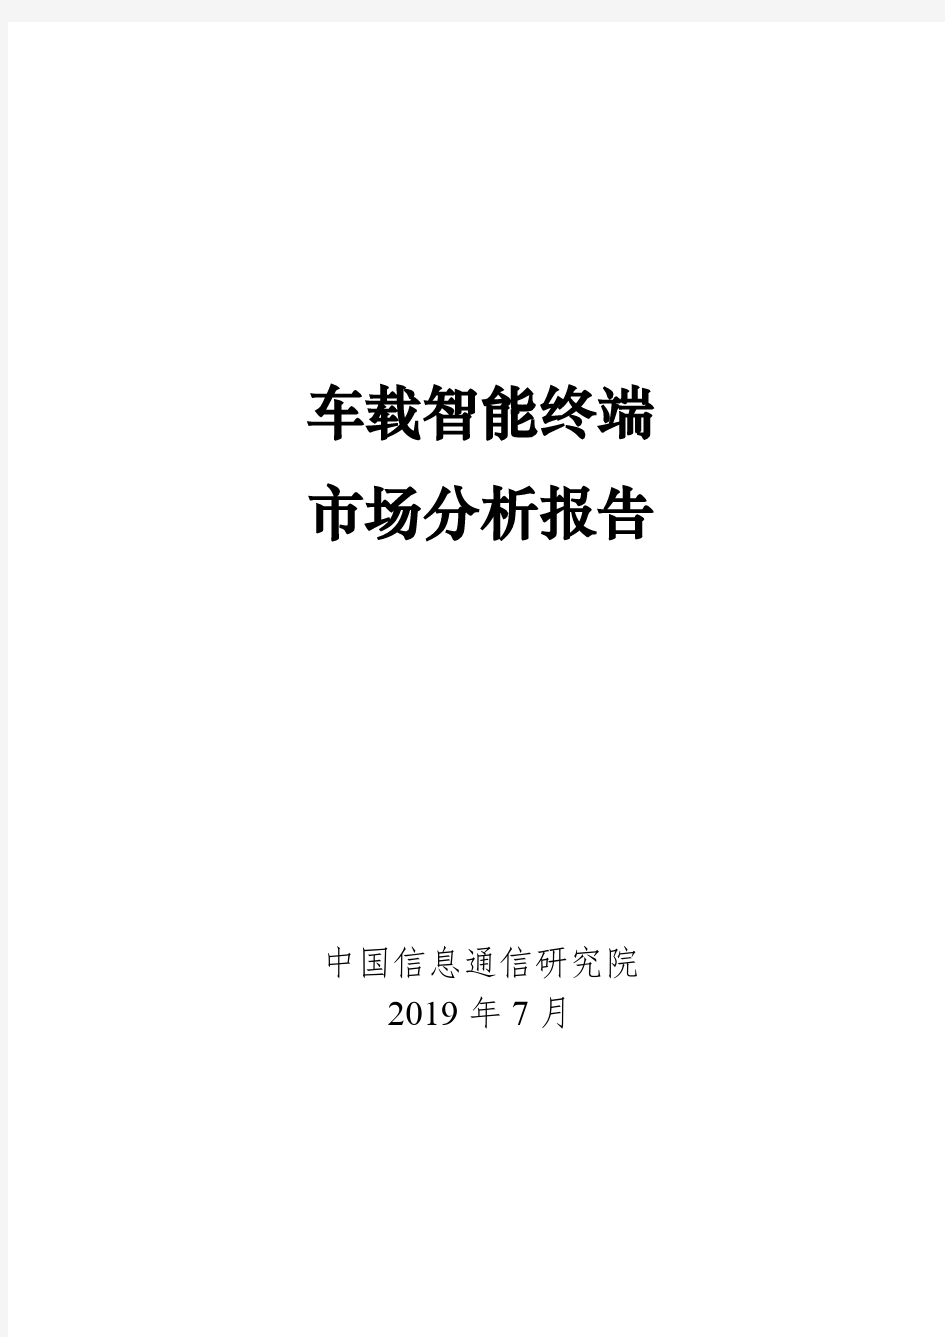 信通院-车载智能终端市场分析报告-2019.7-26页